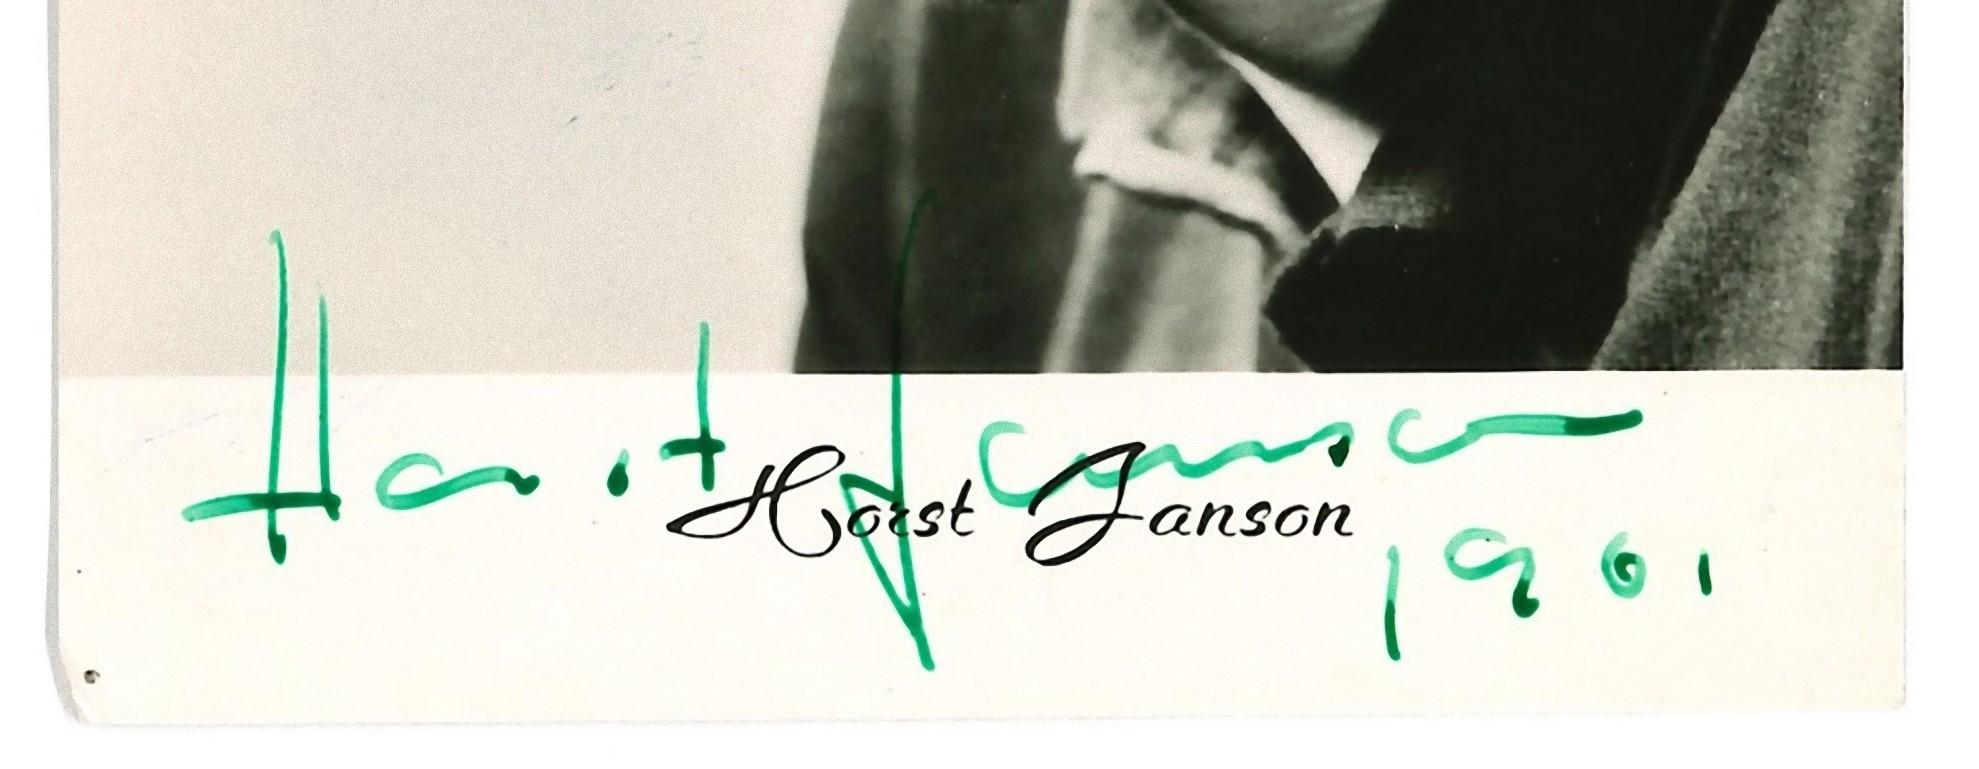 Autographed Portrait of Horst Janson - Vintage  b/w Postcard - 1961 - Photograph by Unknown